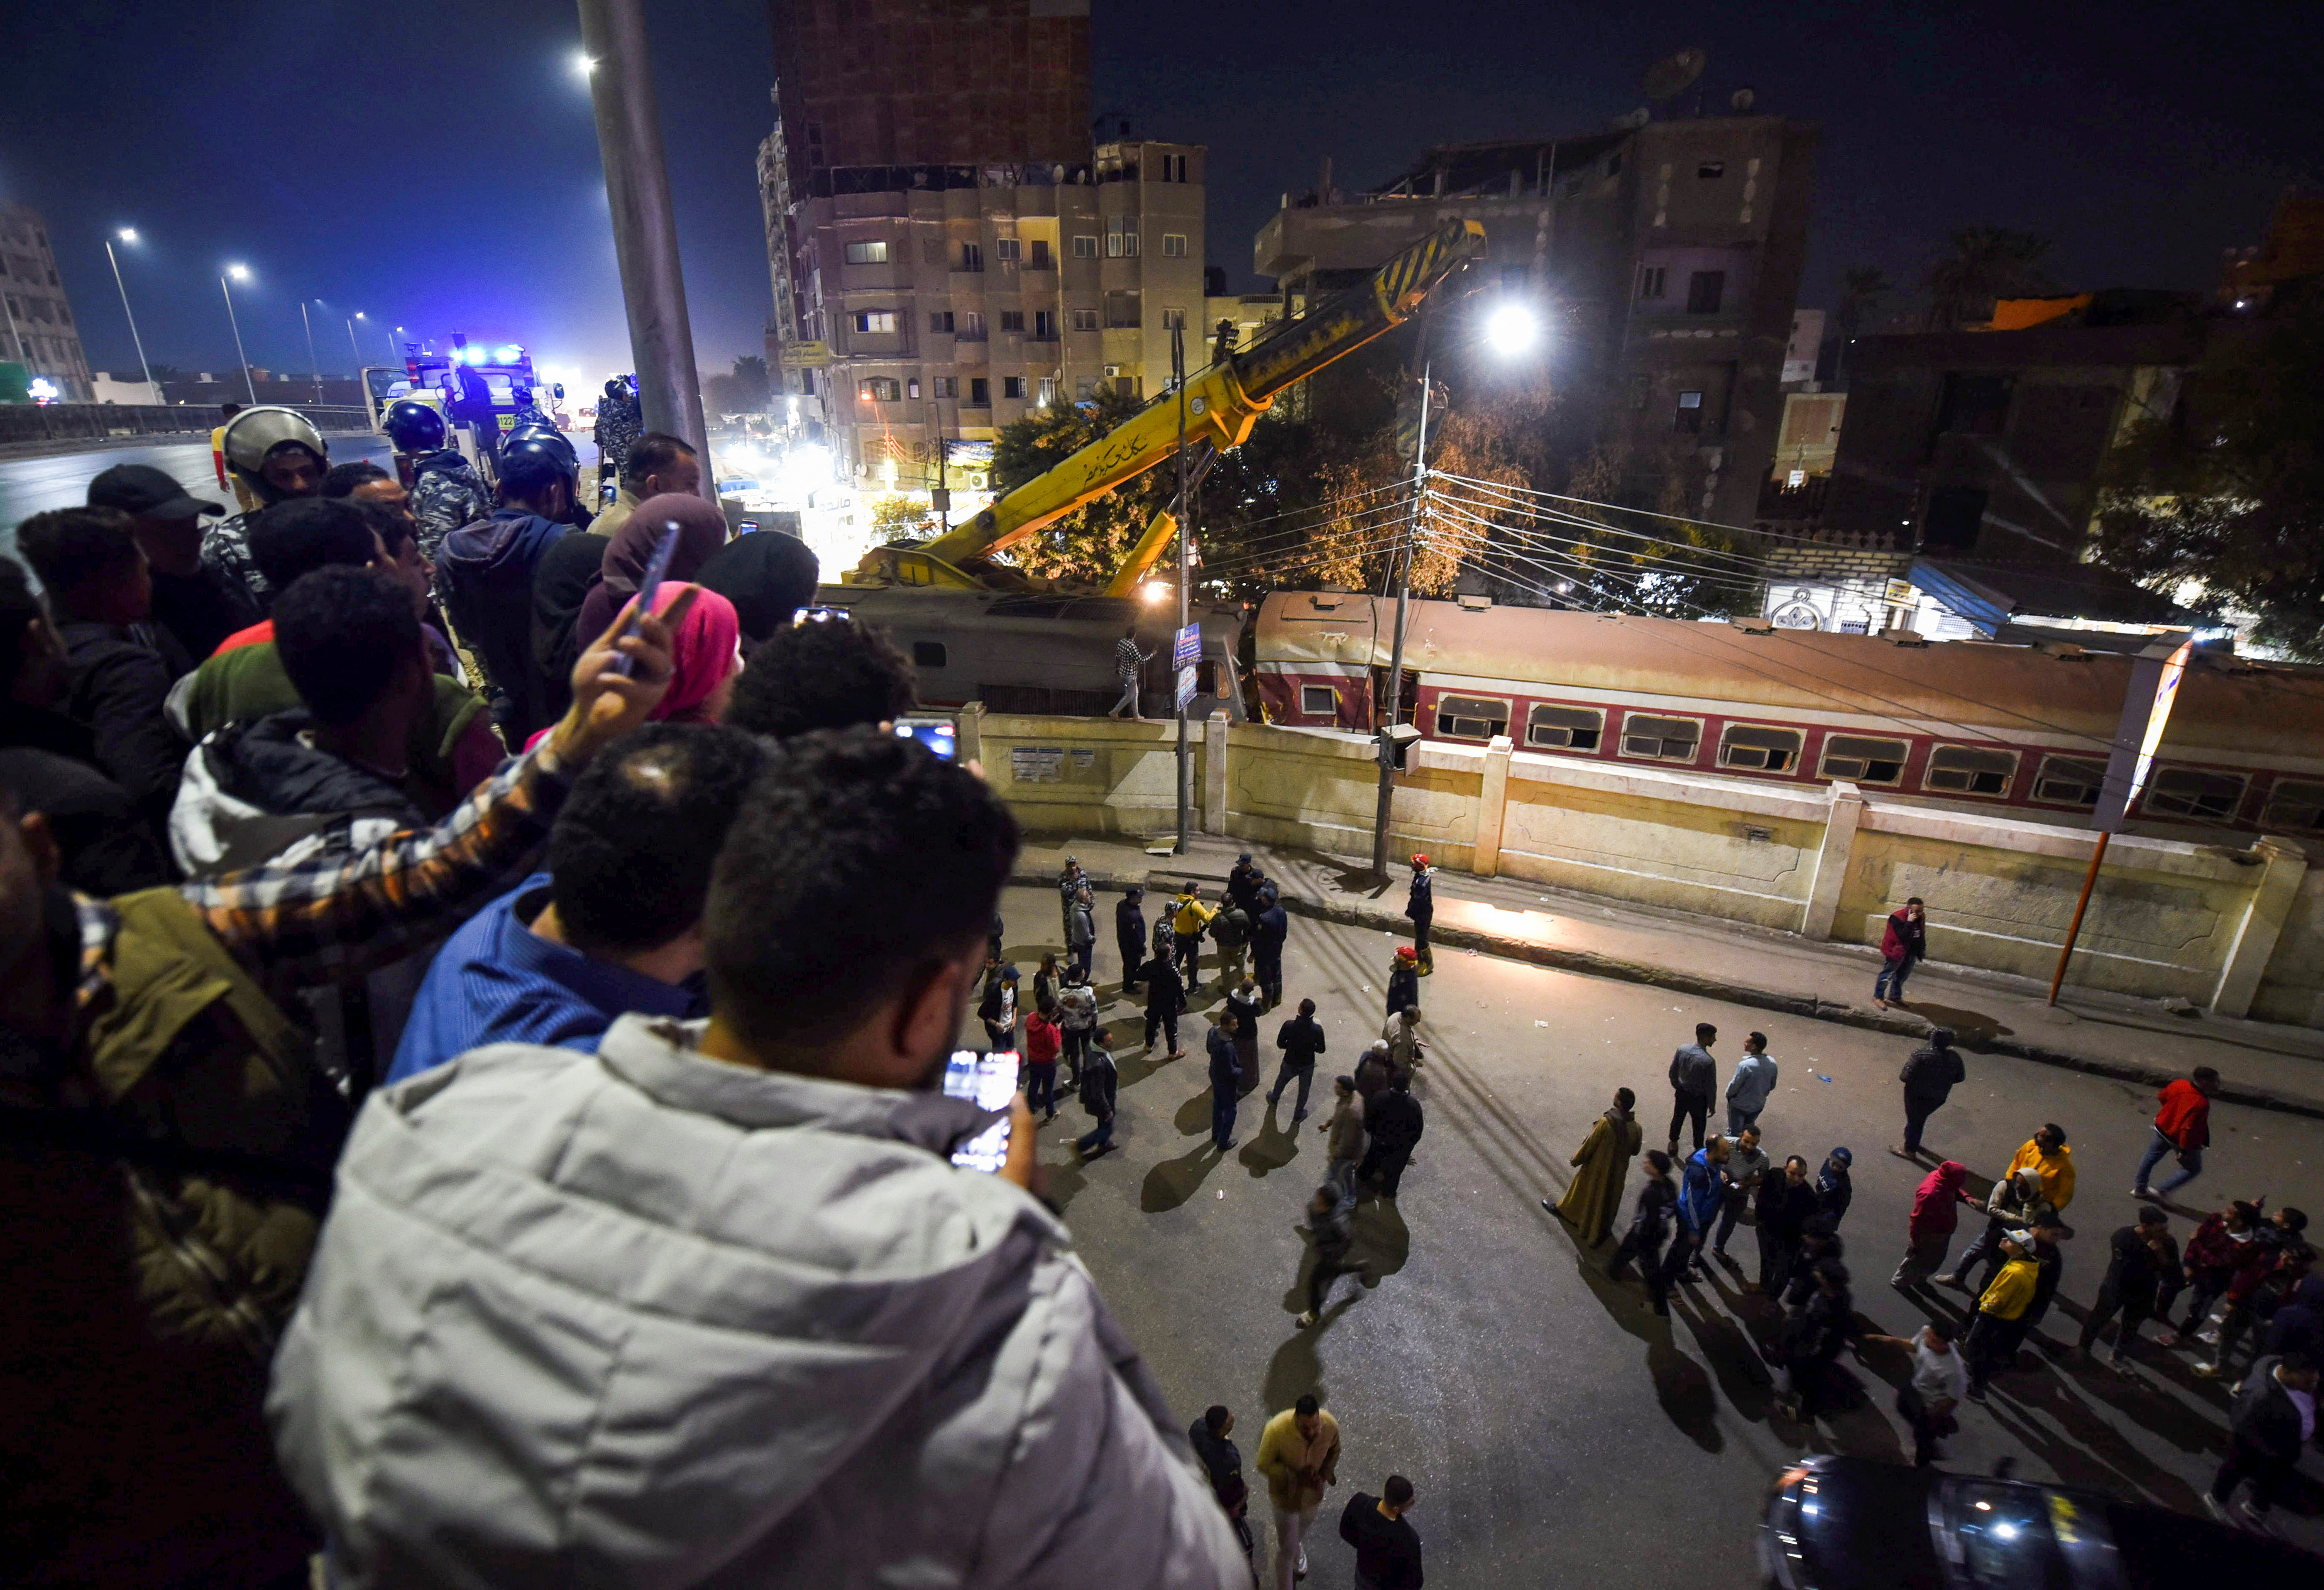 Vecinos observan cómo las autoridades rescatan a las personas atrapadas en los vagones del tren accidentado (REUTERS/Shokry Hussien)